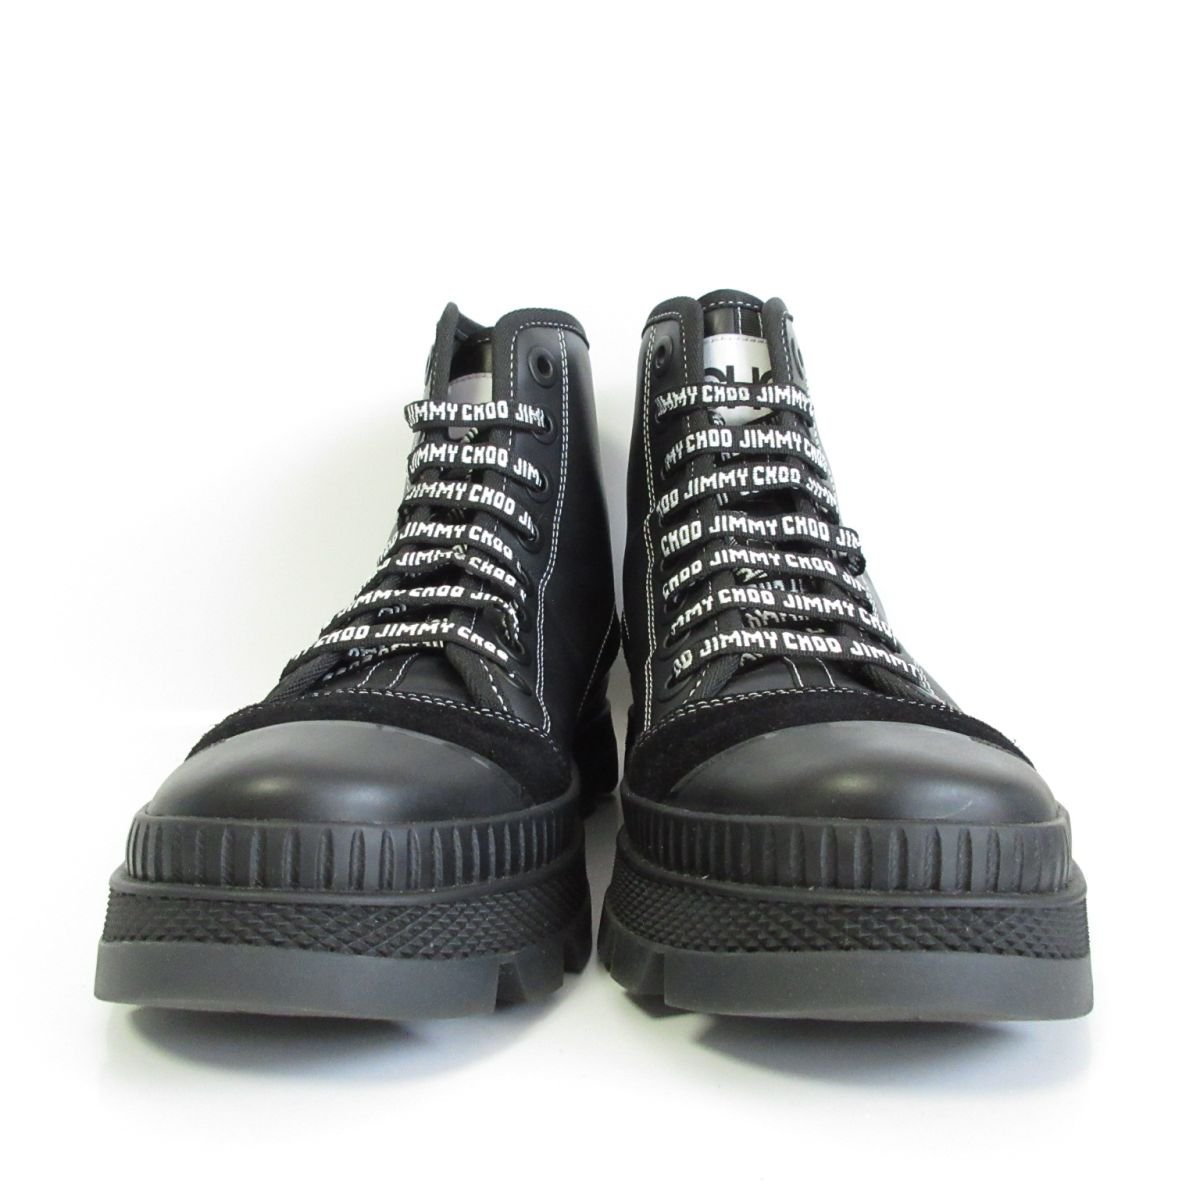 新品同様 JIMMY CHOO ジミーチュウ NORD sneaker boots レザー×スエード ラバーソール ハイカットスニーカー ブーツ 41 約26cm ブラック_画像3